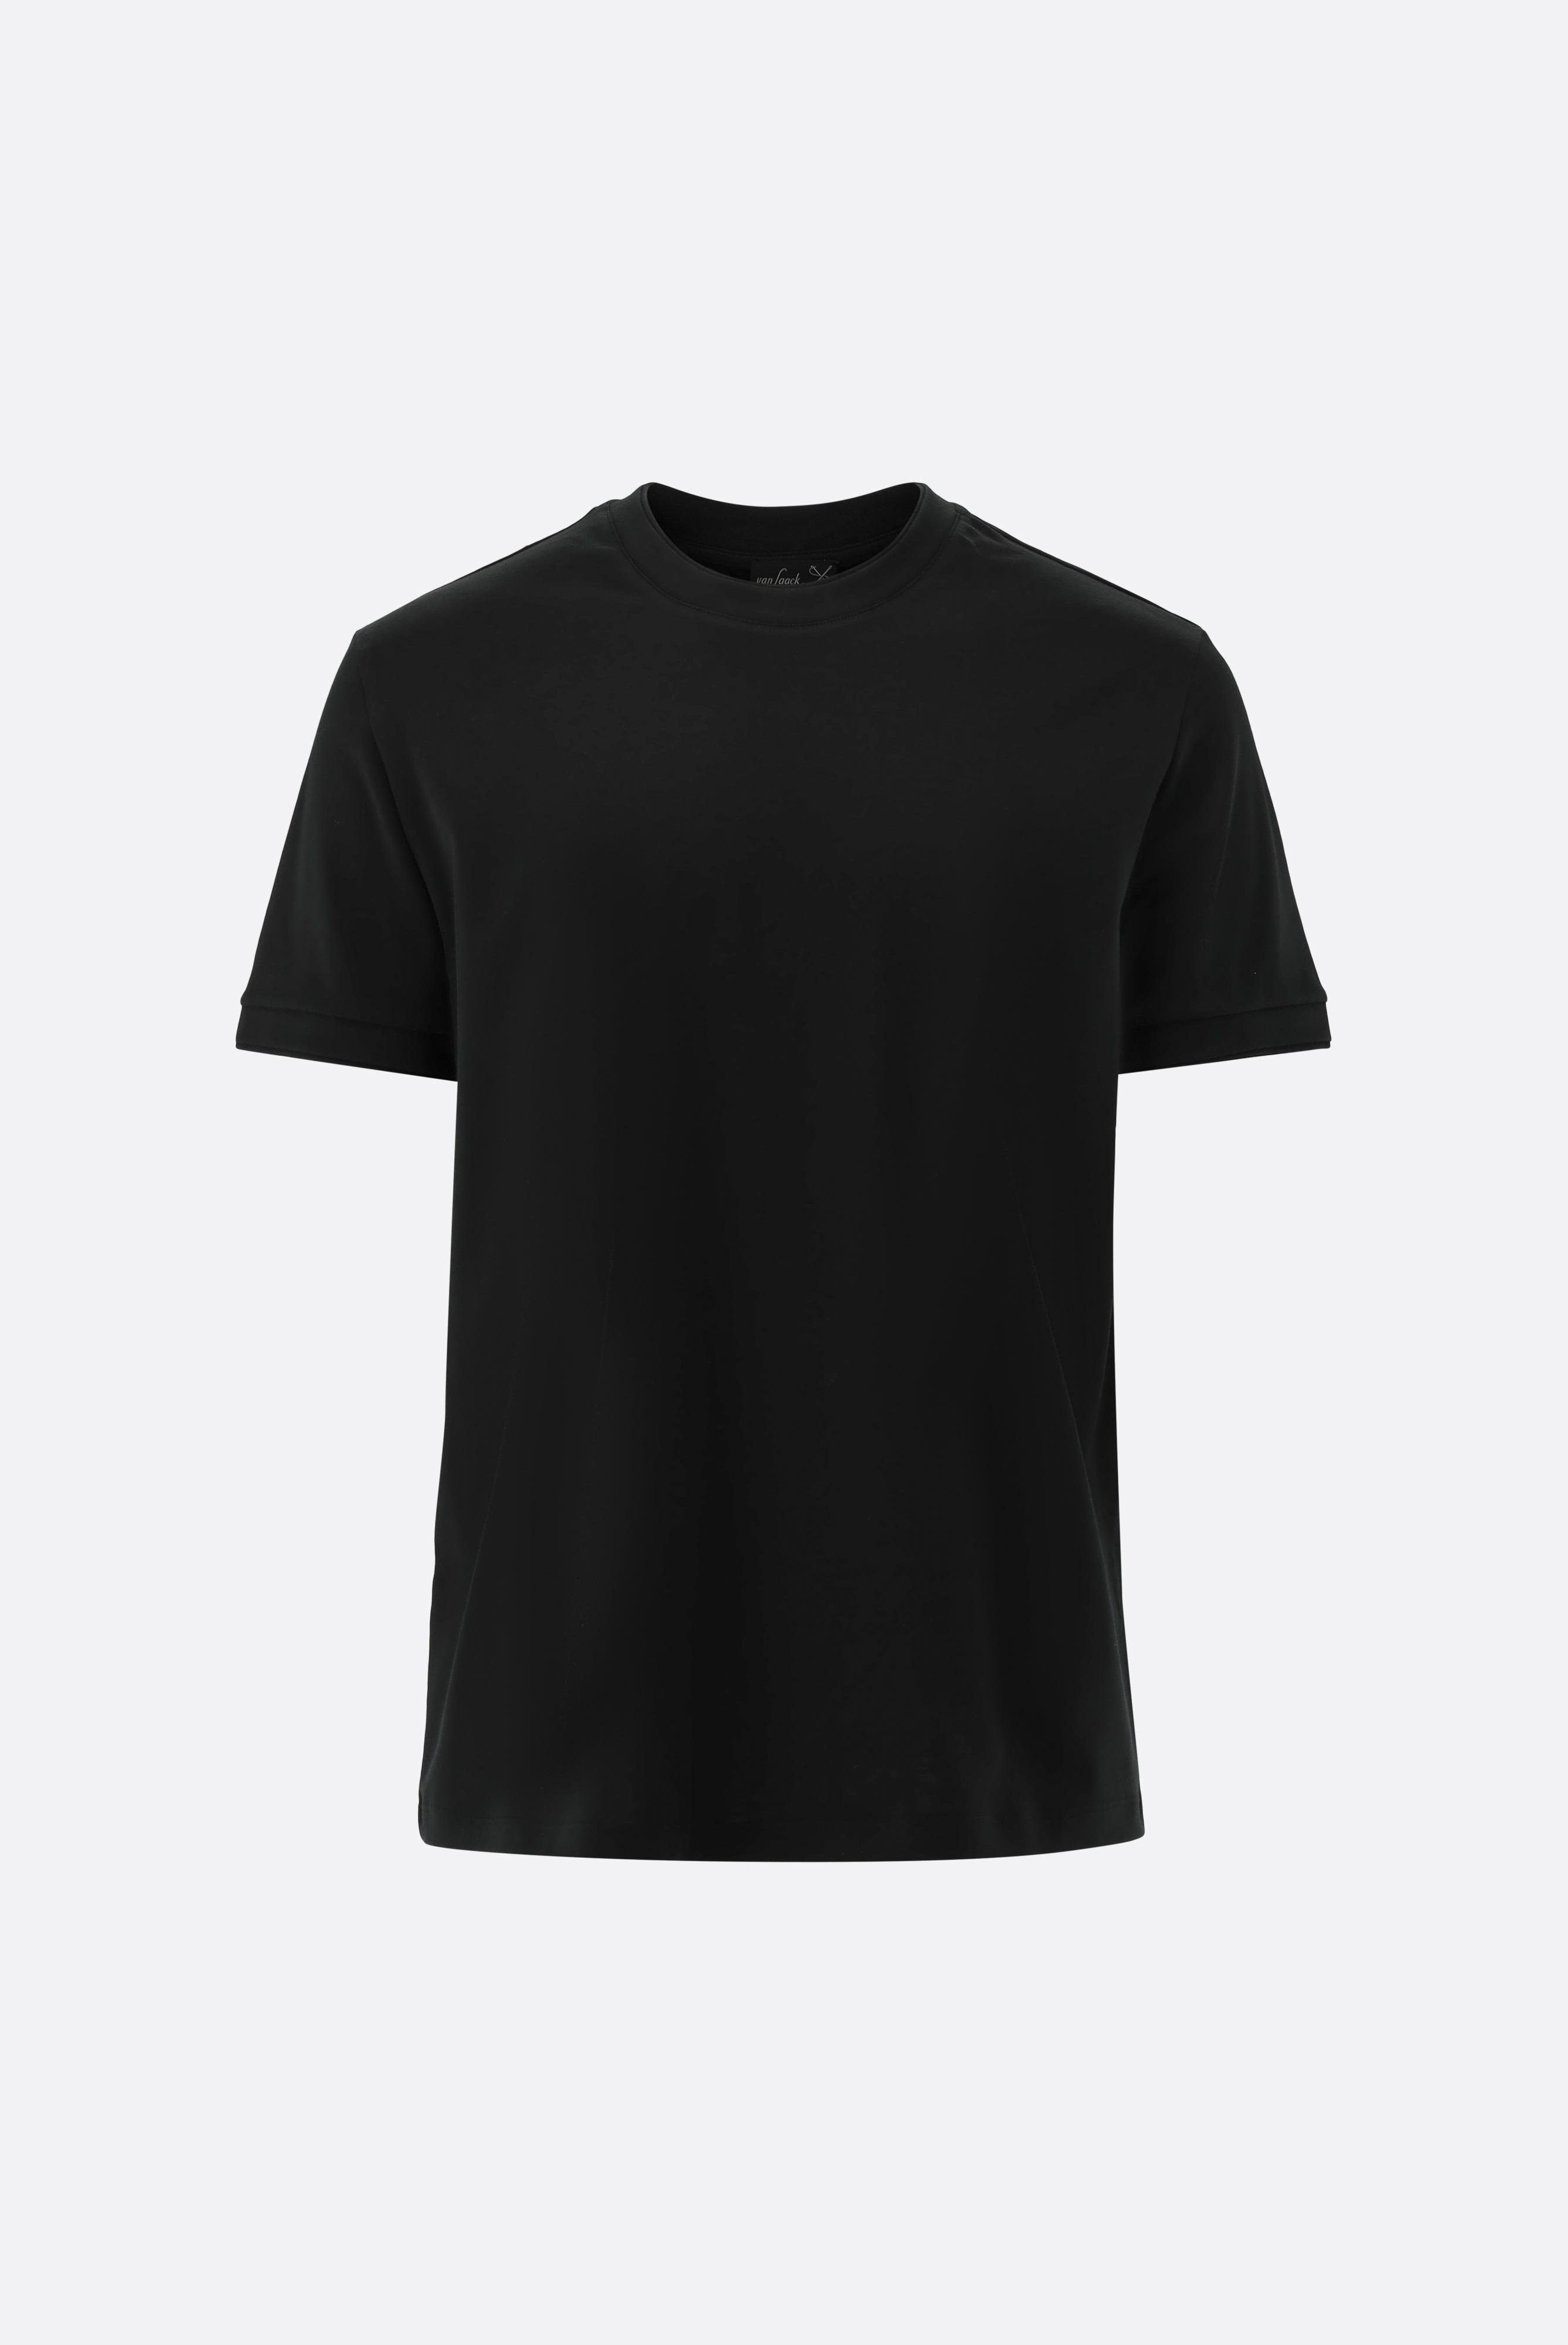 T-Shirts+T-Shirt mit Paspel Details+20.1673.U2.180053.099.S